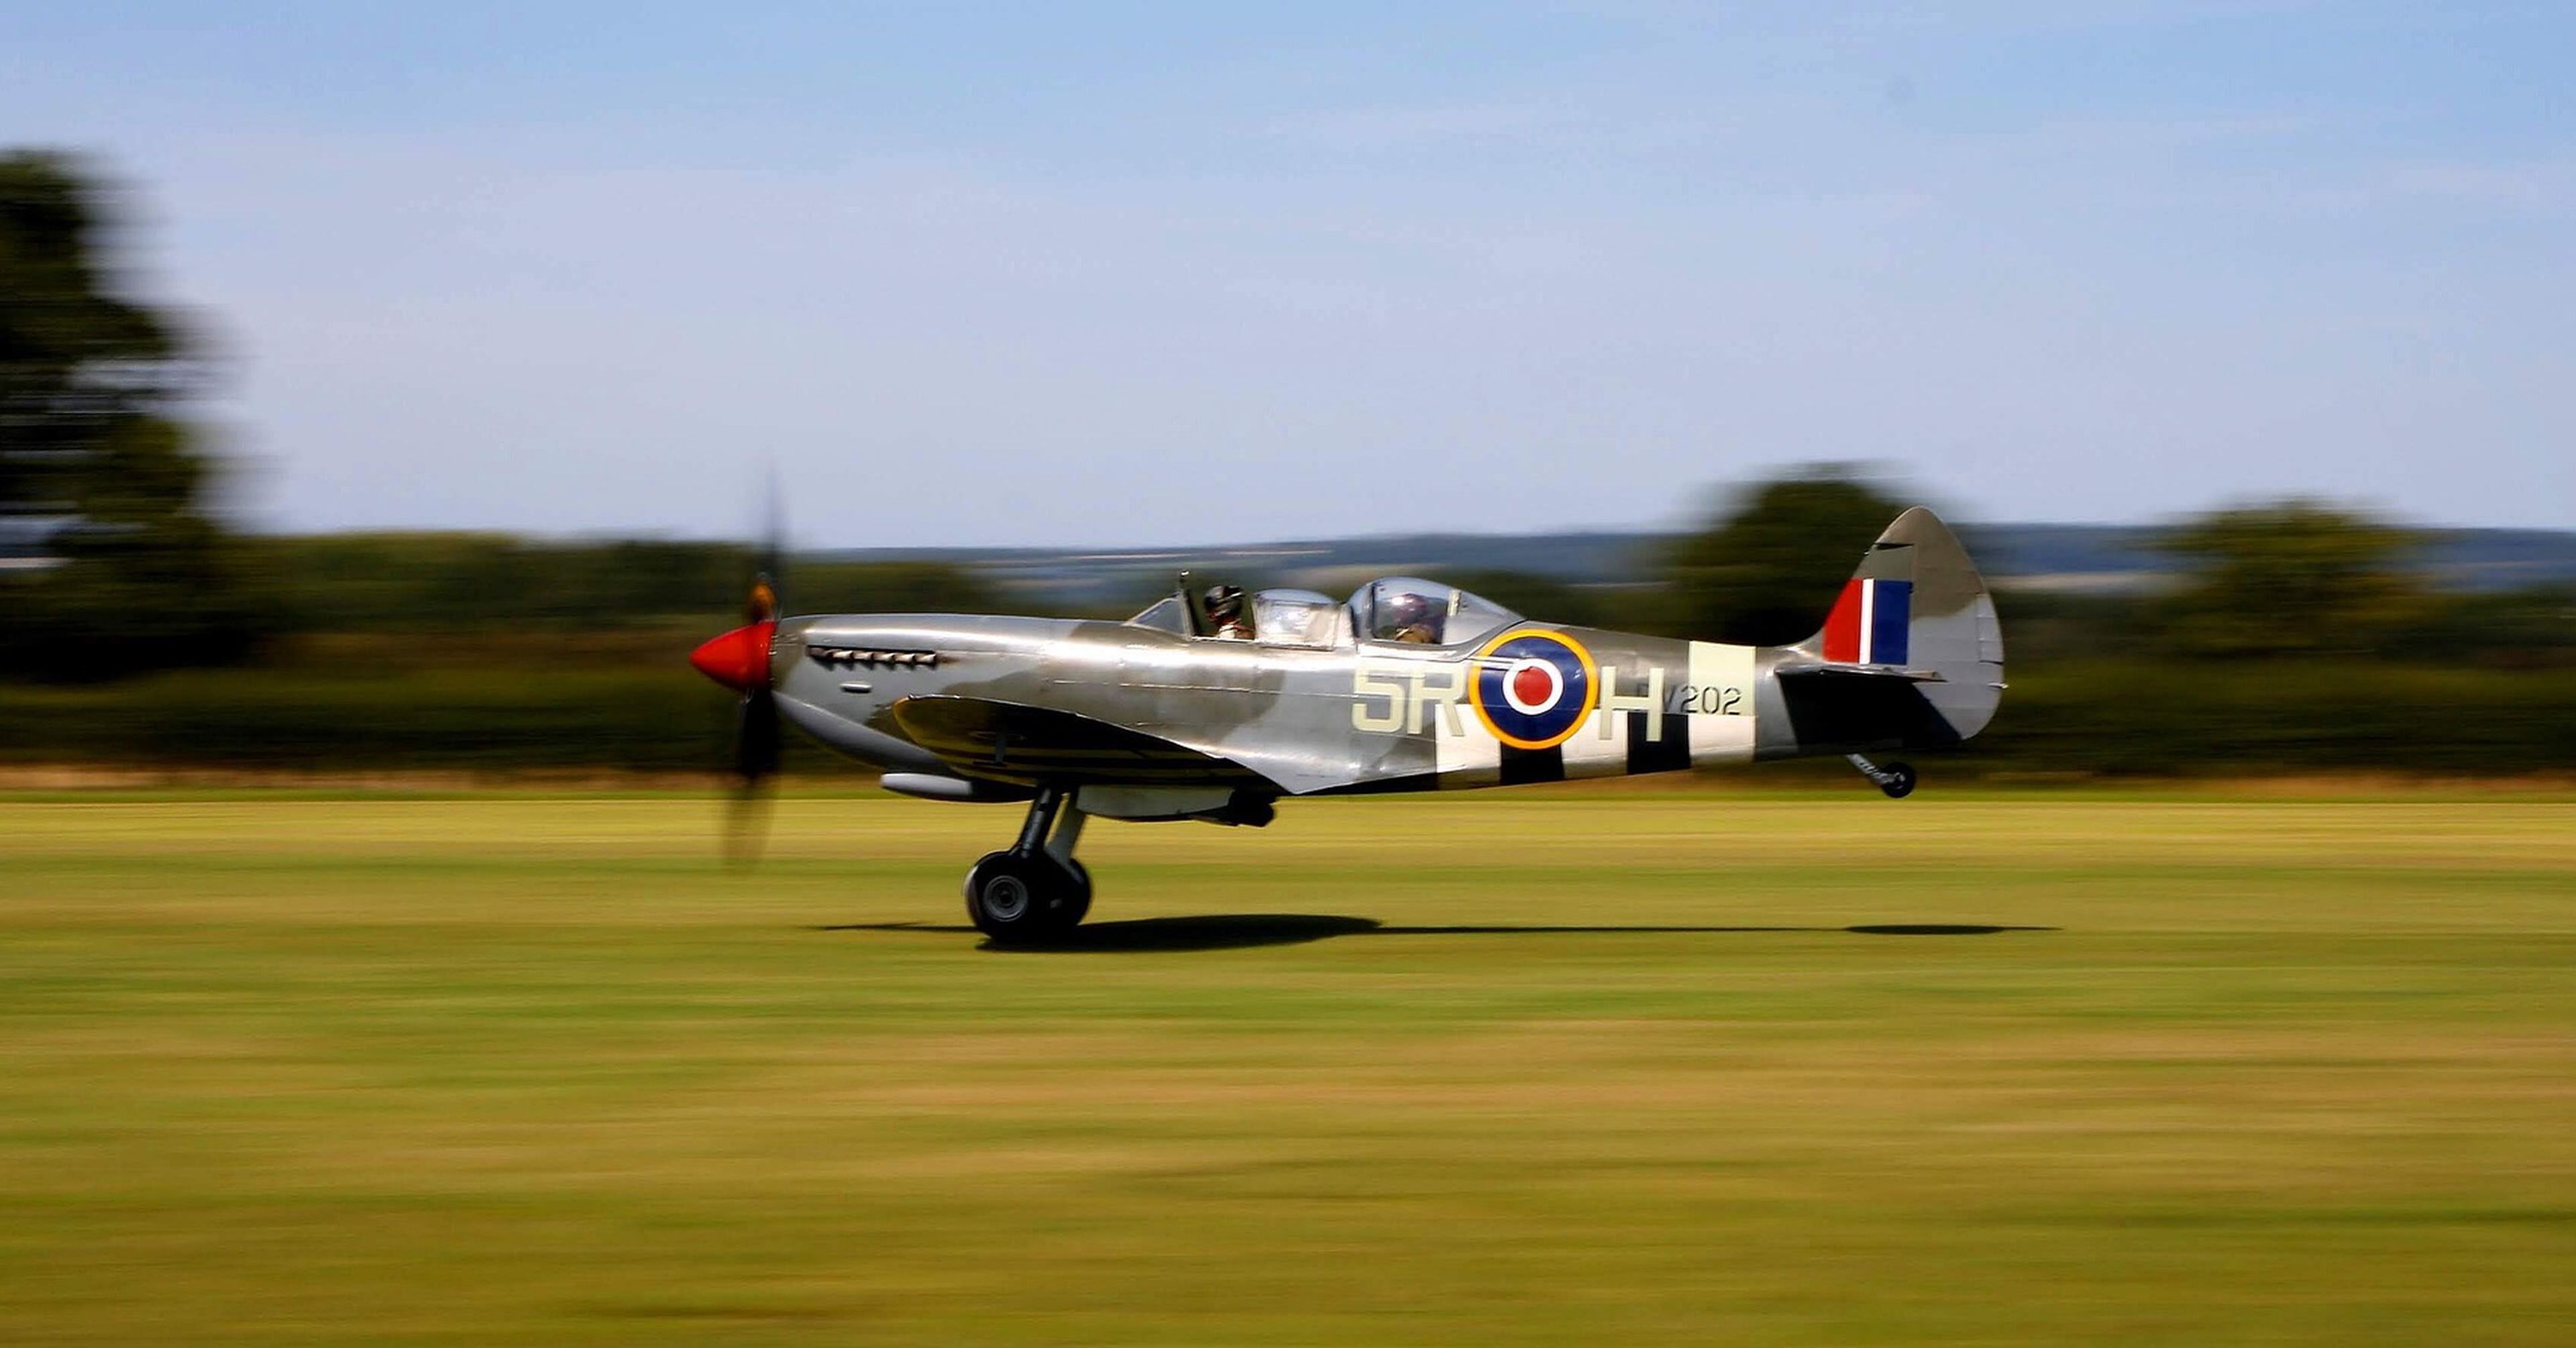 Este caza es un Spitfire de 1944 con un Merlin 66 de 1.315 CV. Foto: Pixabay